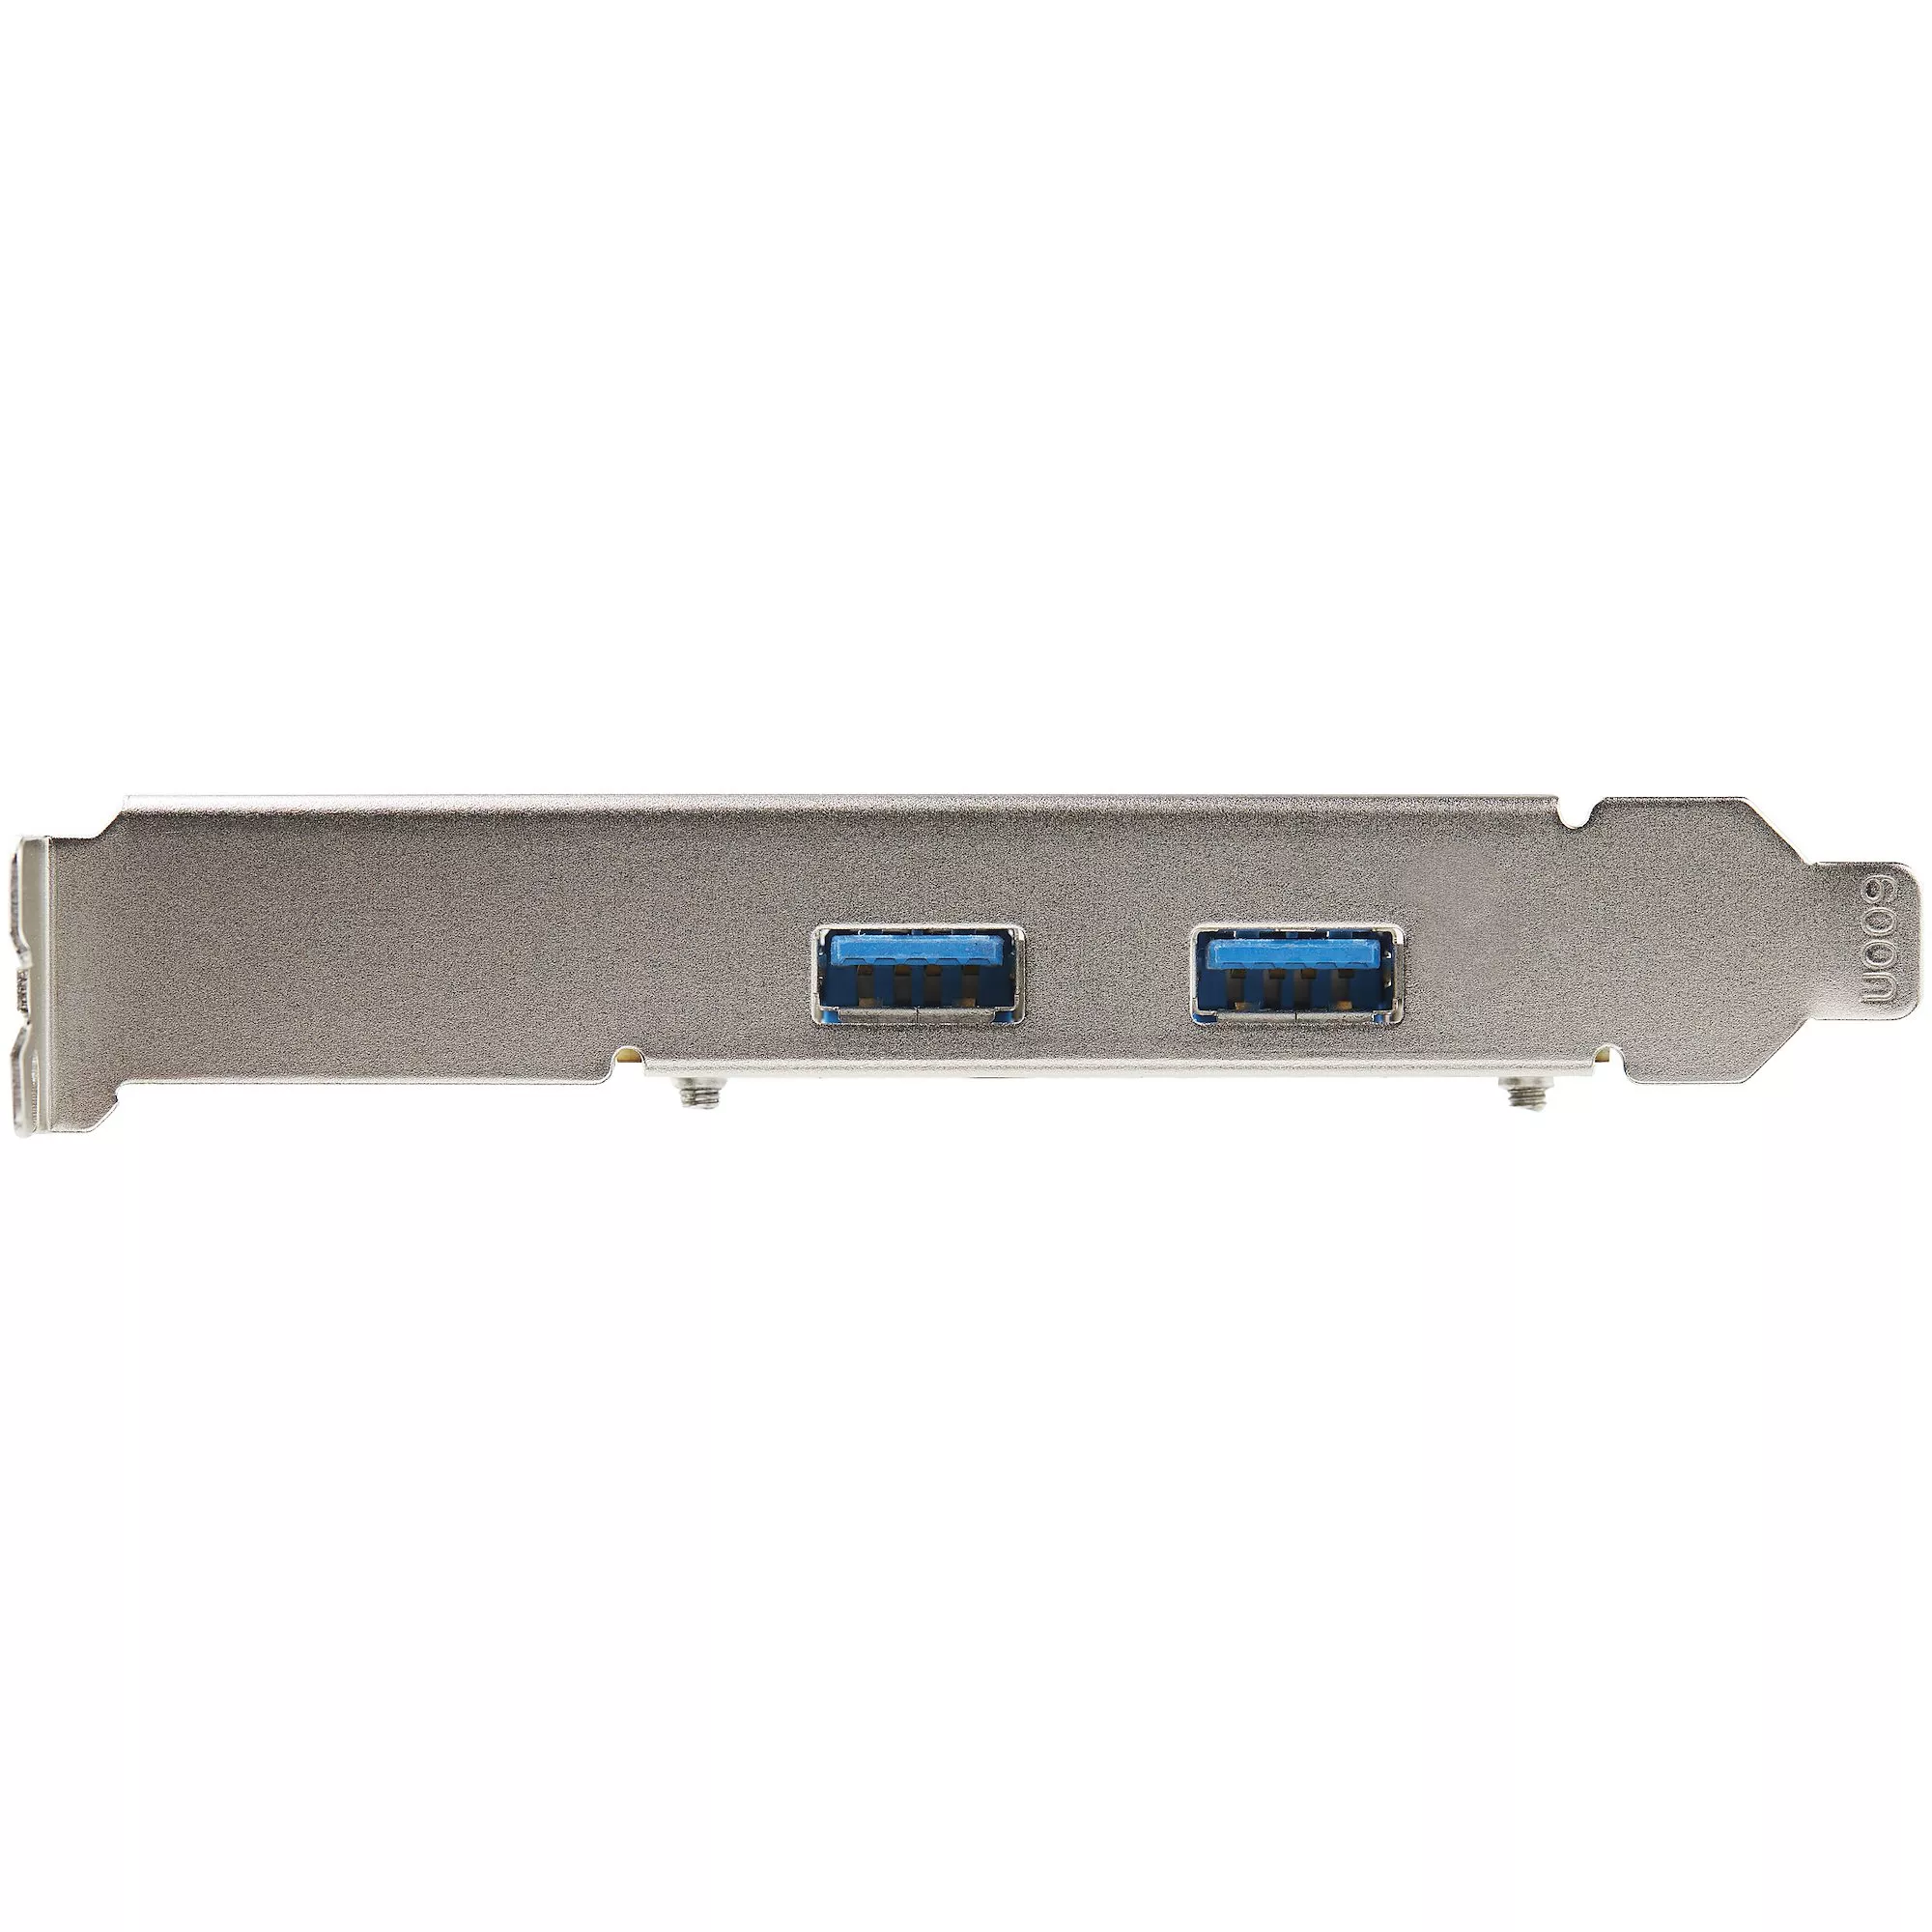 Achat StarTech.com Carte PCIe 2 Ports USB - 10Gbps/port sur hello RSE - visuel 3